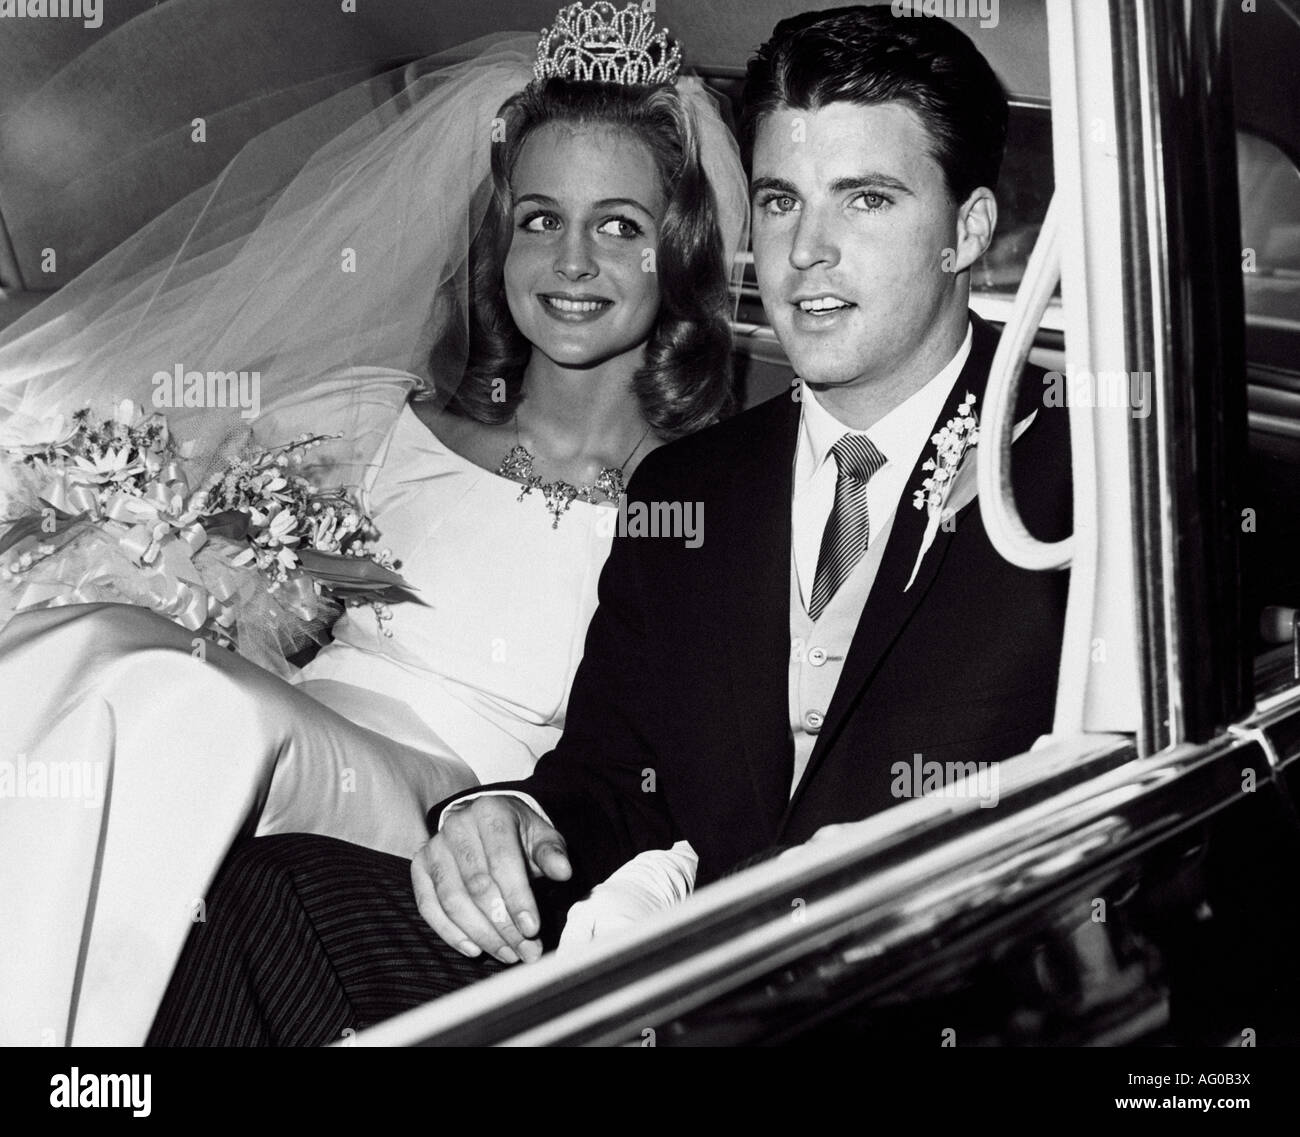 RICKY NELSON cantante pop estadounidense en su boda en Los Angeles en abril de 1963, a la edad de 18 años, Kristin Harmon Foto de stock